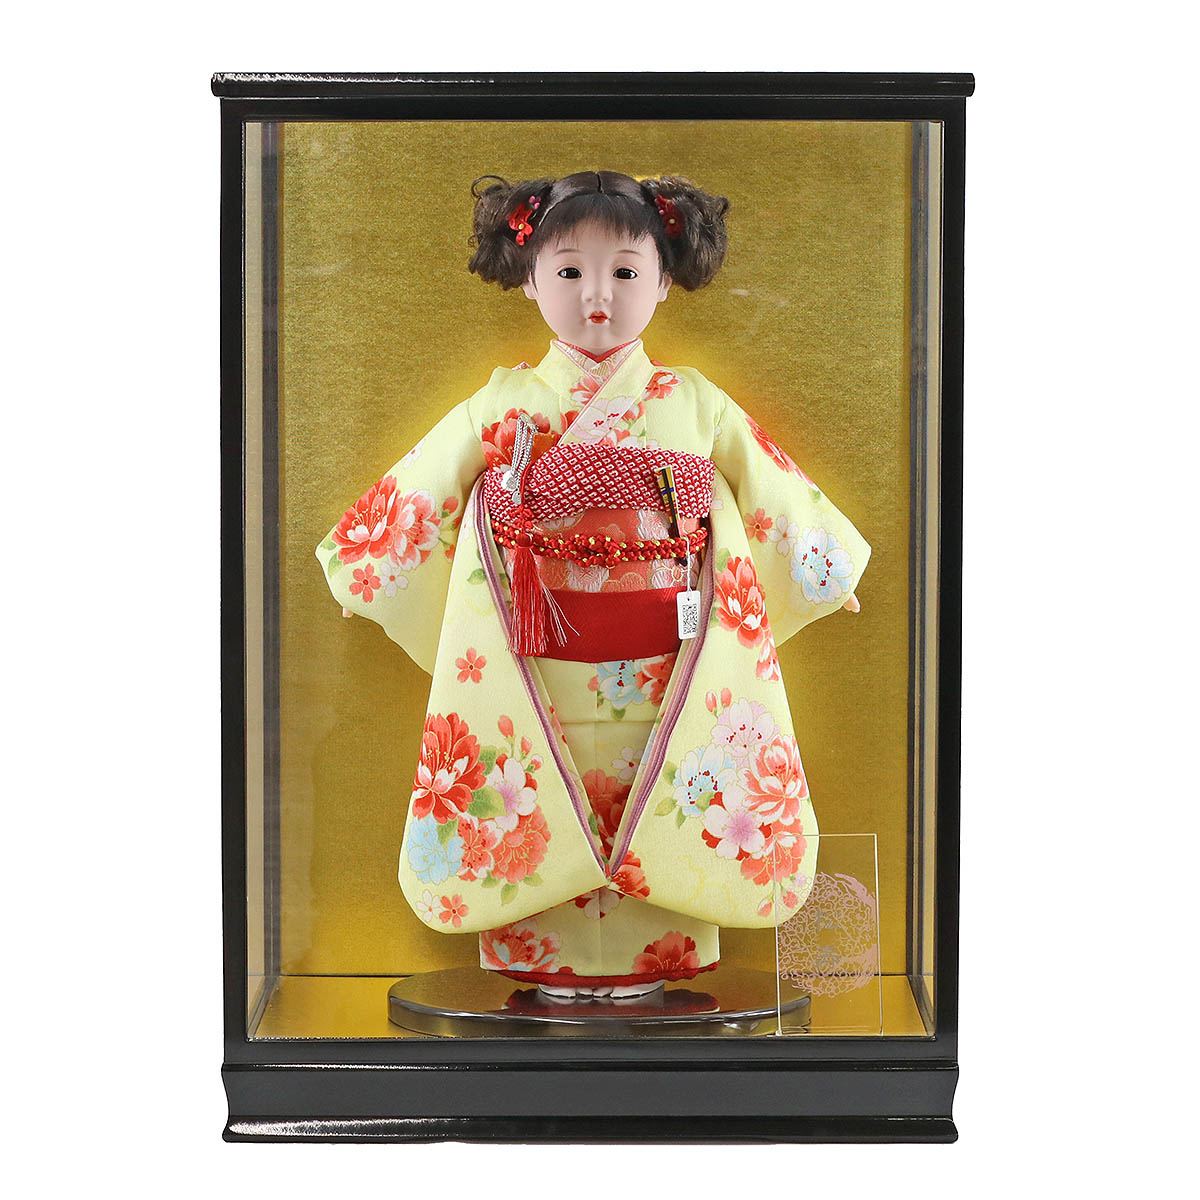 ひな祭りの由来や歴史、雛人形を飾ることの意味や、雛人形のご購入前後によくある質問をまとめました。 [si-65]本格的な段飾りから、コンパクトな収納飾りやケース飾りなど様々なタイプをご用意しております。 松寿作 市松人形 京友禅 シルエット桜 黄 ガラスケース飾り （HB9） ■松寿作　市松人形　ケース入りガラスケース内寸：間口36×奥行27×高さ50cm 飾った際のサイズ　 間口38.5×奥行30×高さ55.5cm 　★ 詳細画像 ※小さい画像をクリックすると拡大表示されます。※スマホの場合は画像を左右にスワイプすると次の画像が表示されます。 商品名商品番号 松寿作 市松人形 京友禅 シルエット桜 黄 ガラスケース飾り （HB9）ICMY-BA26016-37G-C（HB9） 飾った際のサイズ 間口38.5×奥行30×高さ55.5cm 説明・仕様など ■ガラスケース仕様 ギフト対応 大切な方へ贈るお祝いやプレゼントに最適なギフト対応を承ります。 　 ギフト対応注文についてはコチラをクリック！（新しいウィンドウで開きます） ※ご自宅へ配送の場合でも、価格の分かる明細書などはお入れしていない為、明細書や領収証が必要な場合はお申し付け下さい。 雛人形は職人が一つ一つ手作りしているため、商品写真と一部仕様が異なる場合がございます。 お人形は衣装の柄の出方や、木製部分は木地の色の濃淡や木目の出方が画像と異なります。 また、使用しているモニターやOSなどの環境によって、色や風合いが違って見える場合がございます。 予めご了承ください。